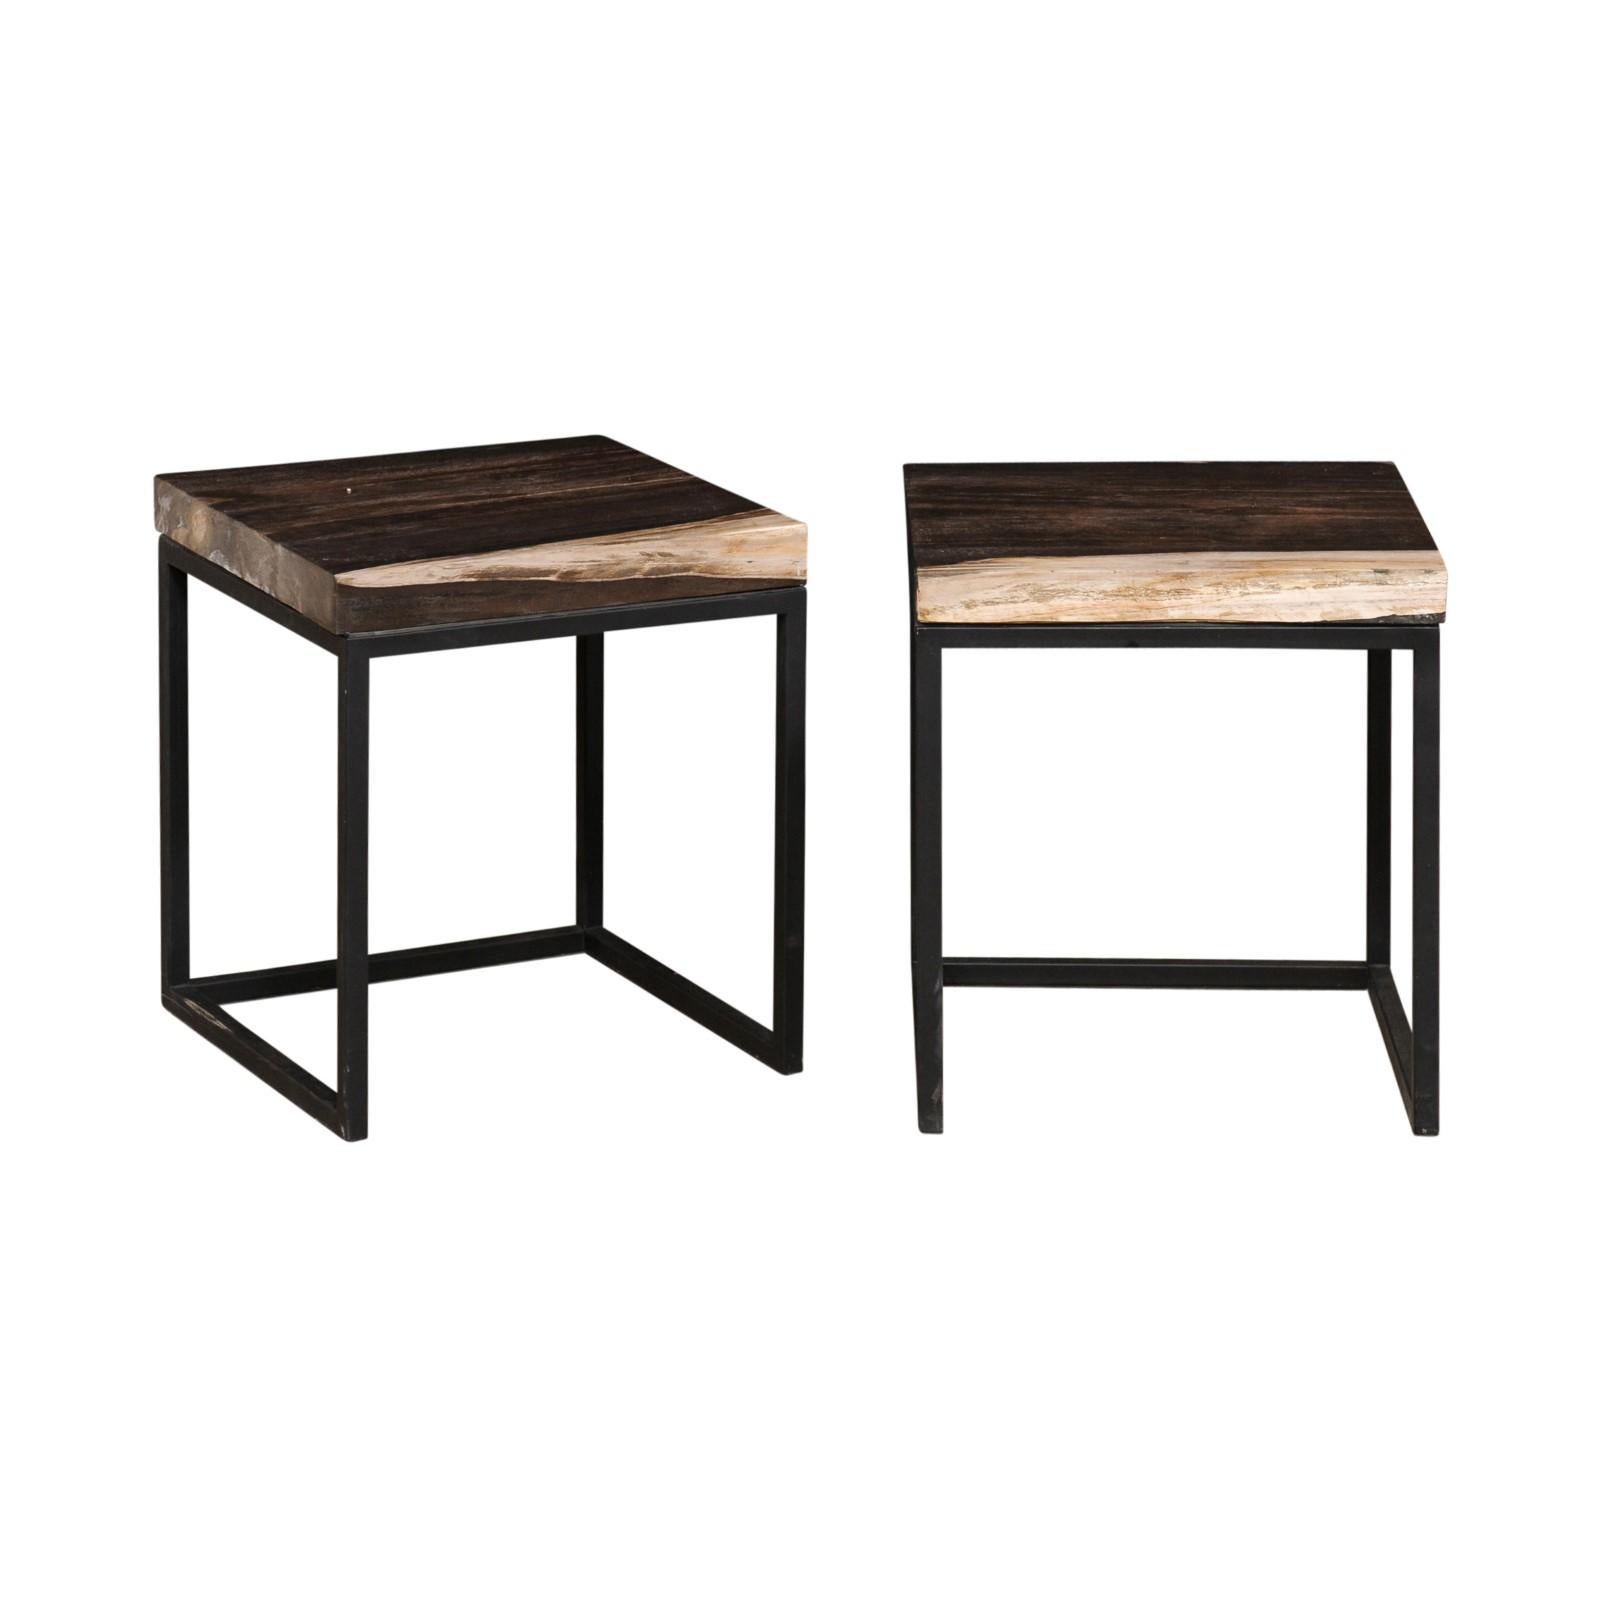 Ein Paar moderne Beistelltische aus versteinertem Holz und Eisen. Diese beiden Tische haben jeweils eine quadratische Platte aus versteinertem Holz (15,75